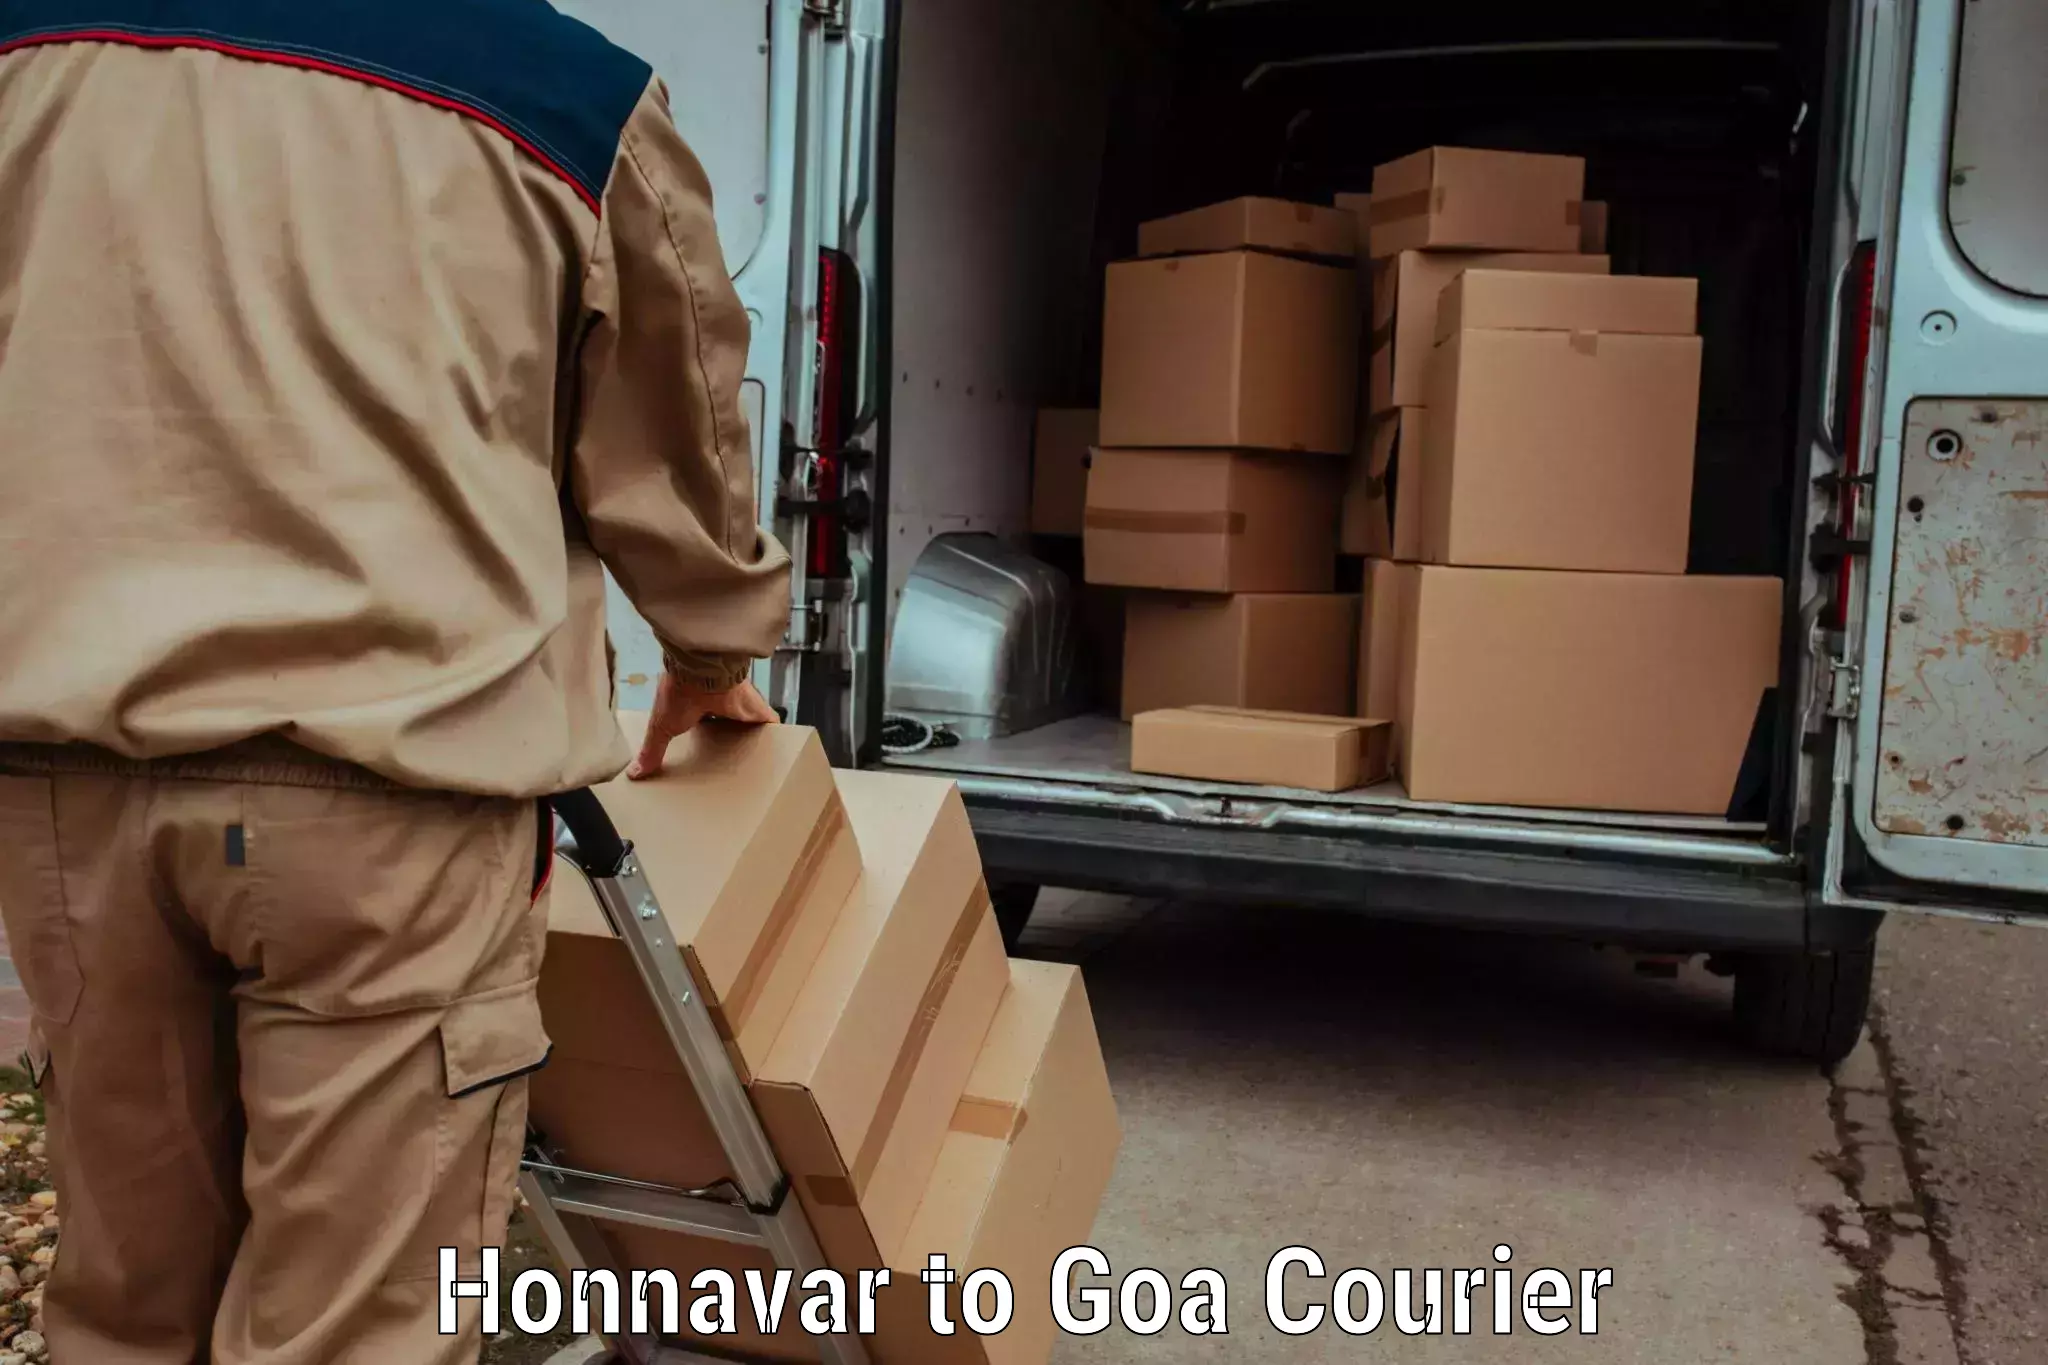 24/7 courier service Honnavar to Mormugao Port